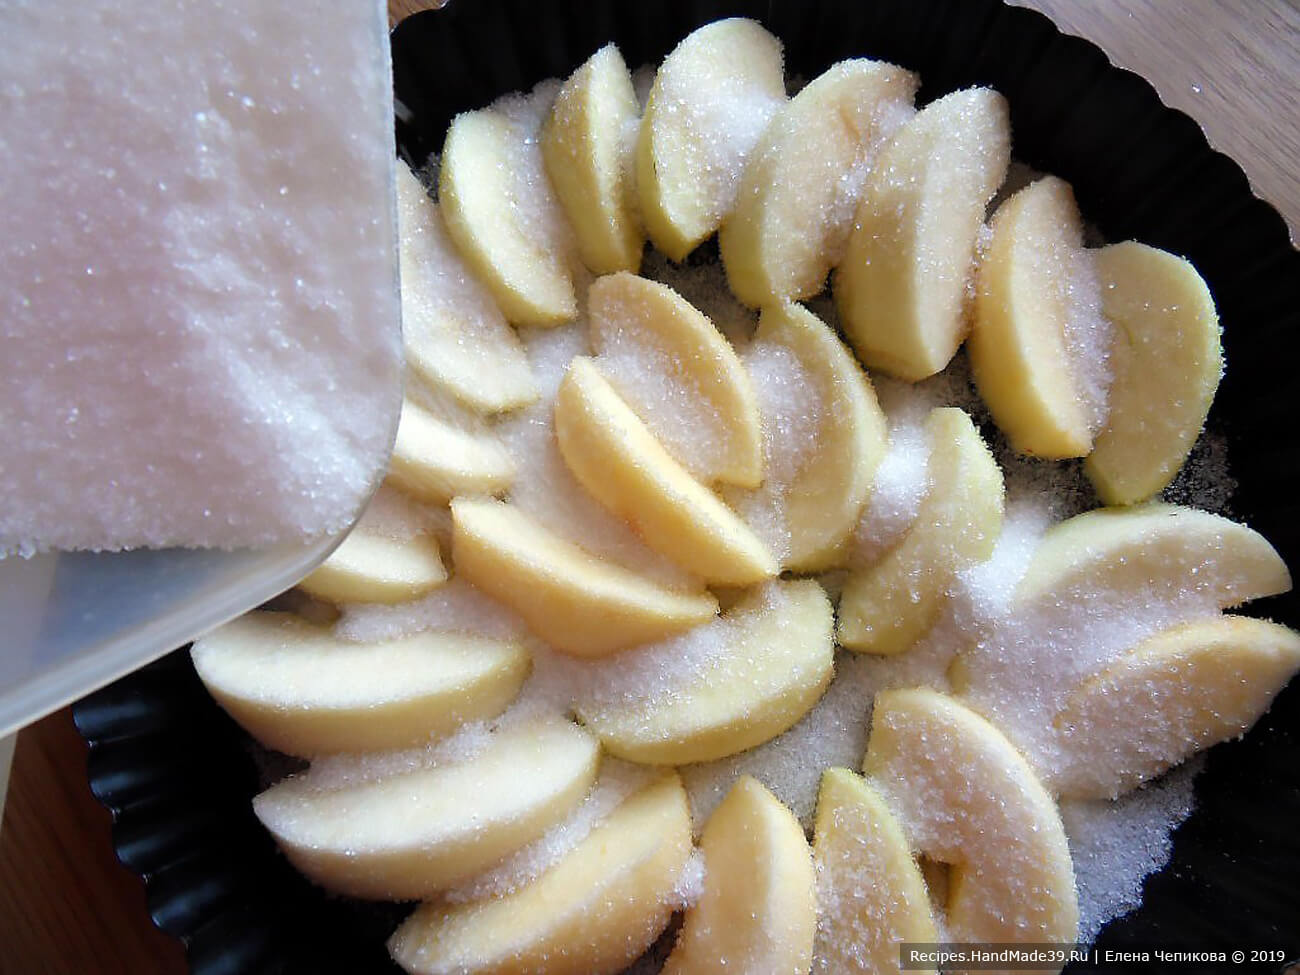 Выложить яблоки в форму для запекания, посыпать 100 г сахара